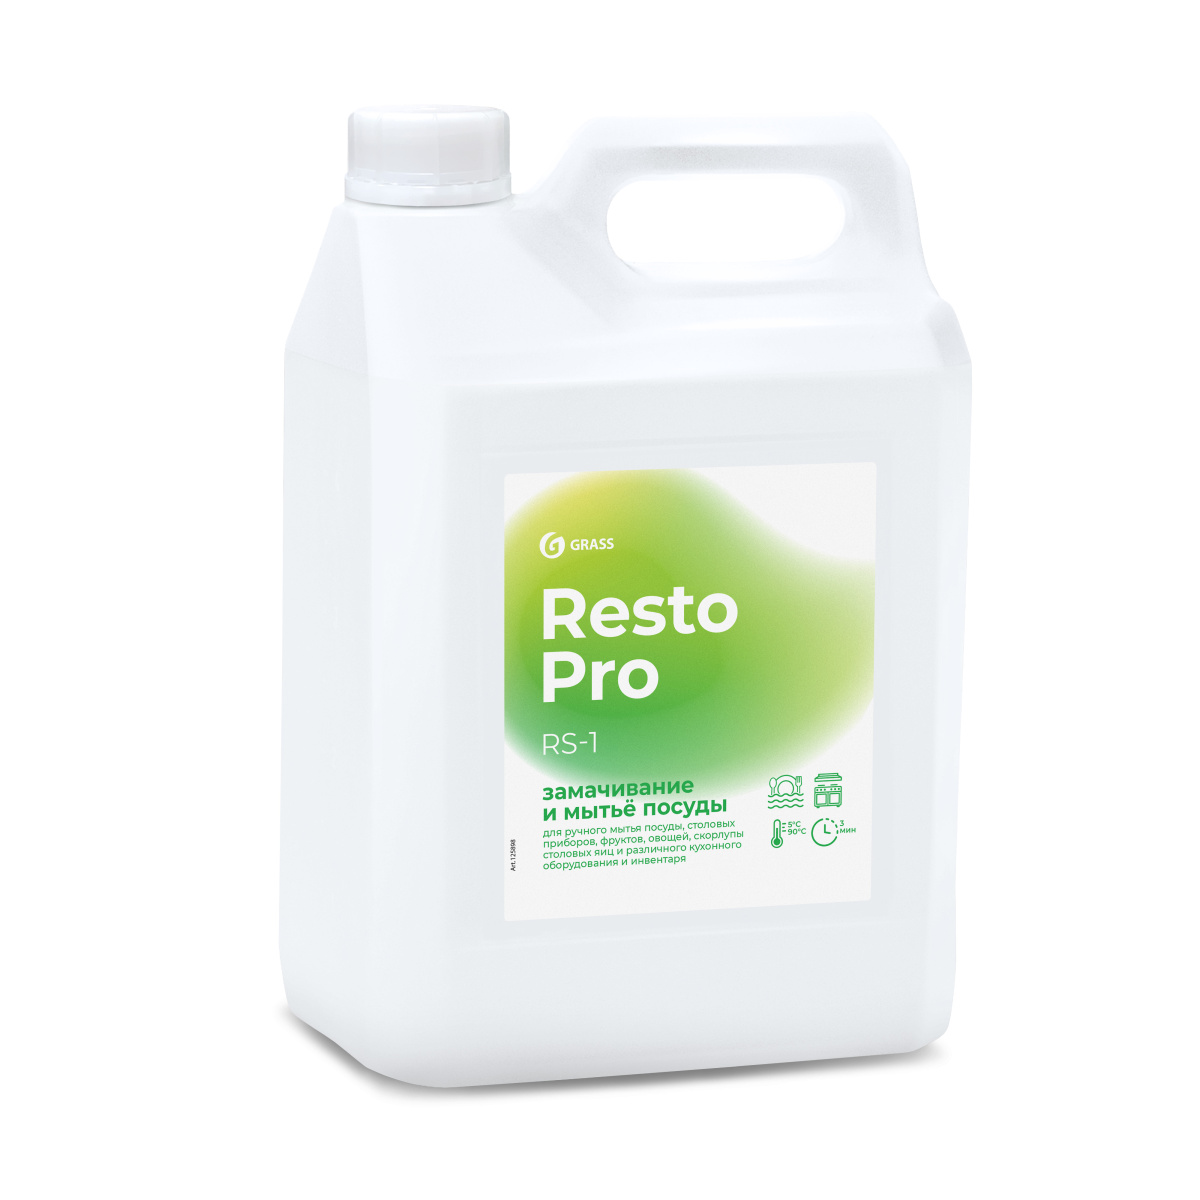 Resto Pro RS-1 Средство для замачивания и мытья посуды 5 л